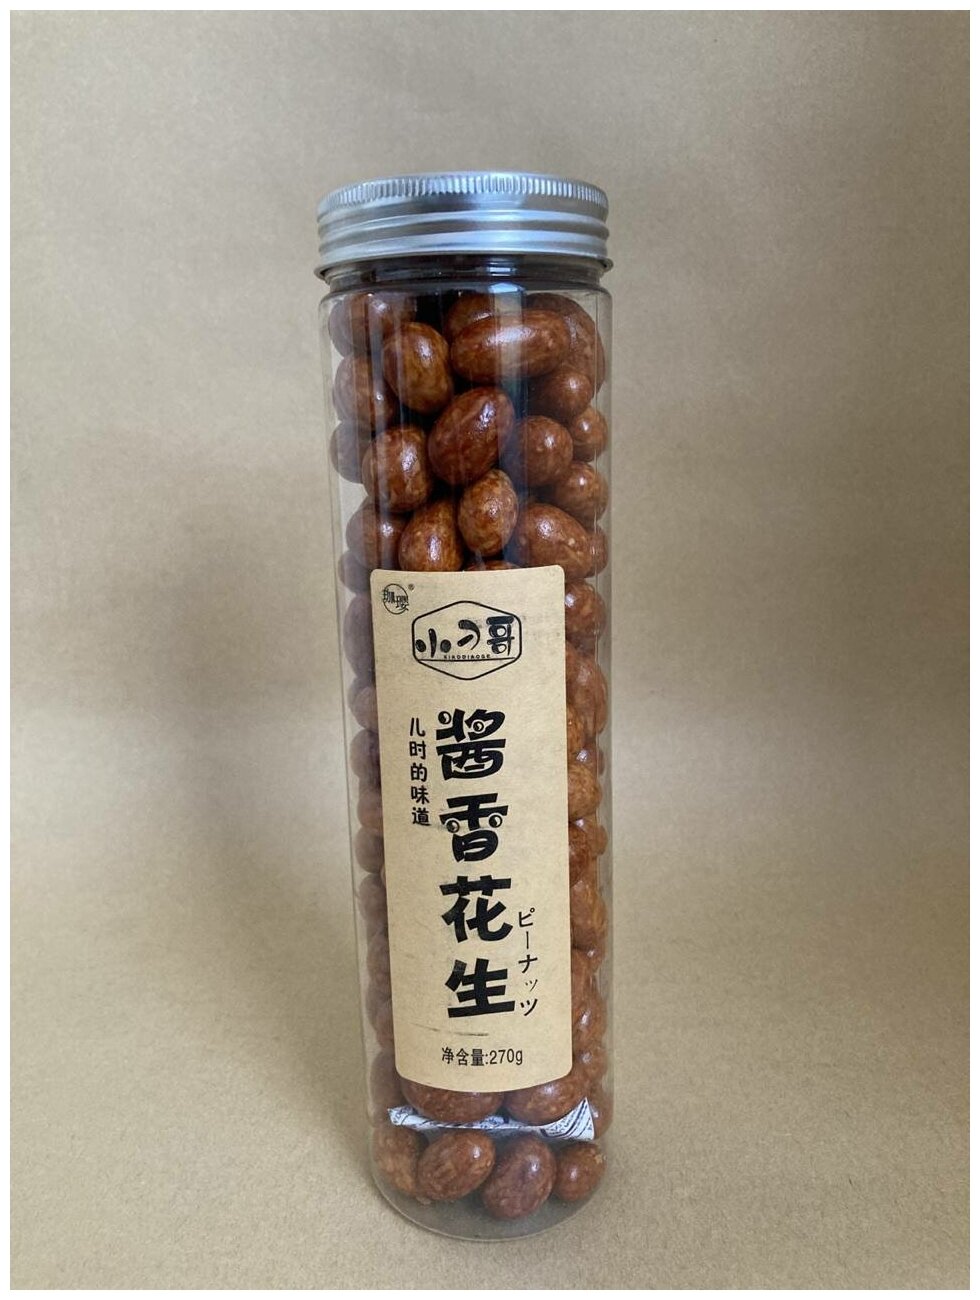 Японские арахисовые бобы со вкусом соевого соуса